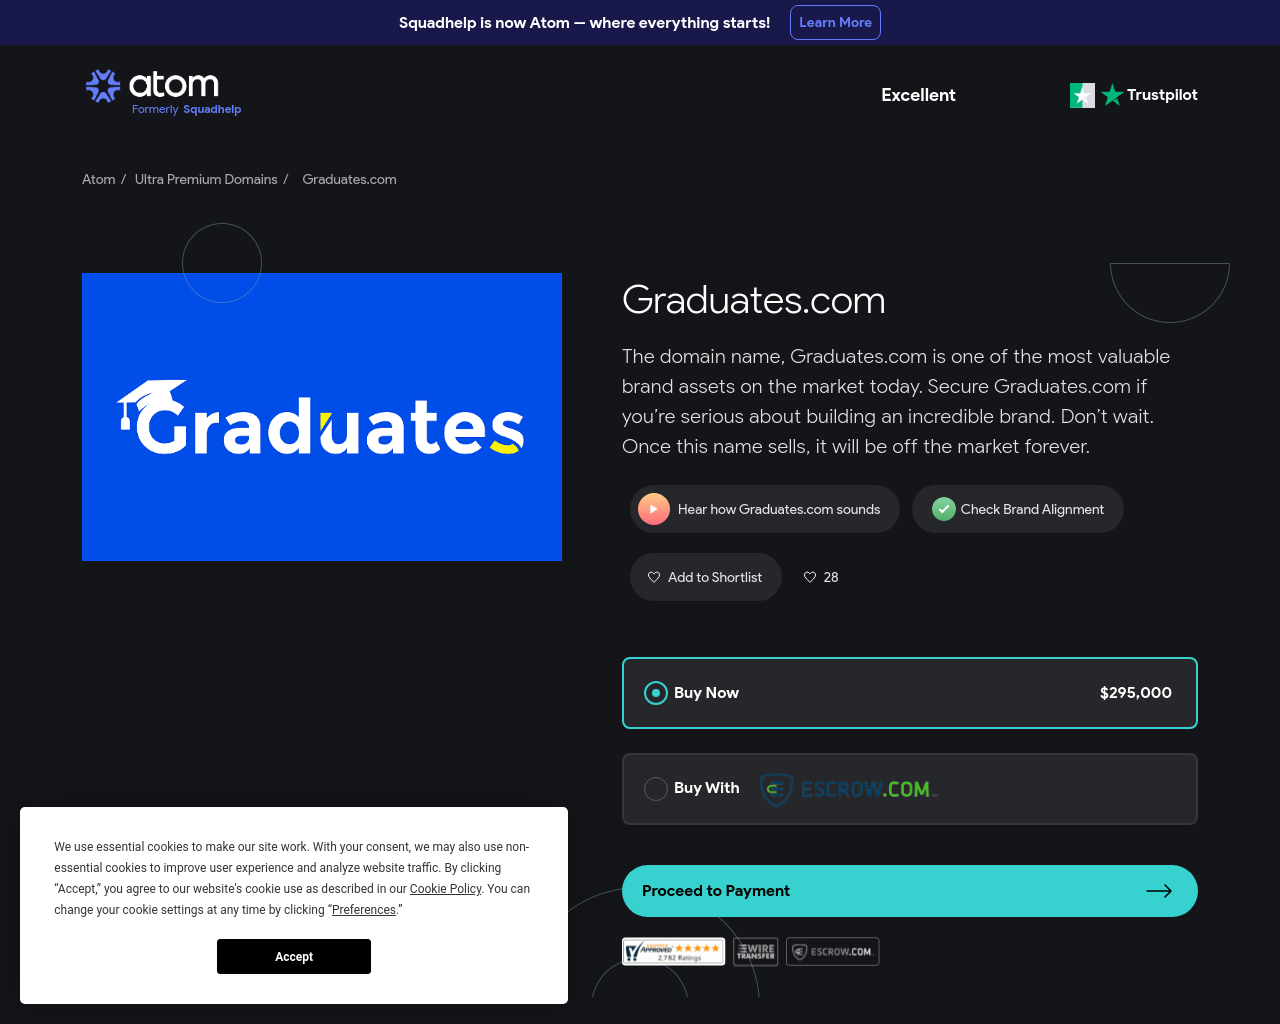 graduates.com